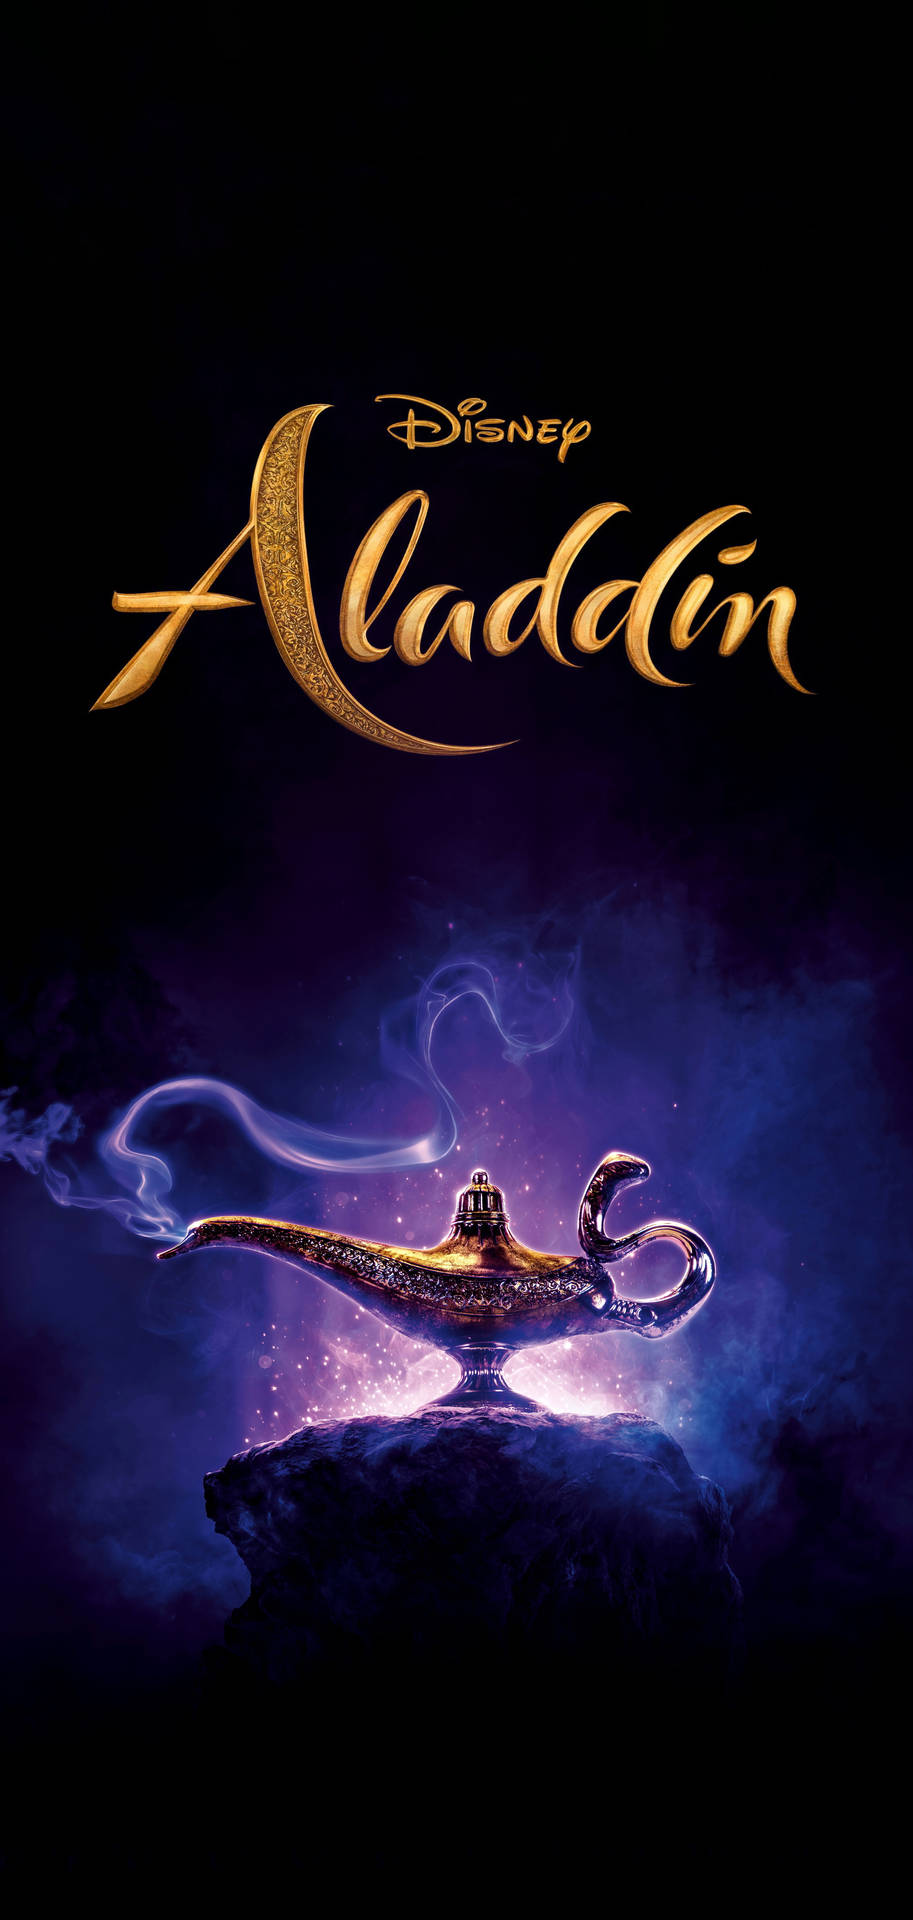 Aladdin Live Action Disney Phone Wallpaper – Tag de mest eventyrlige øjeblikke med denne smukke Live Action Aladdin-telefon wallpaper. Wallpaper